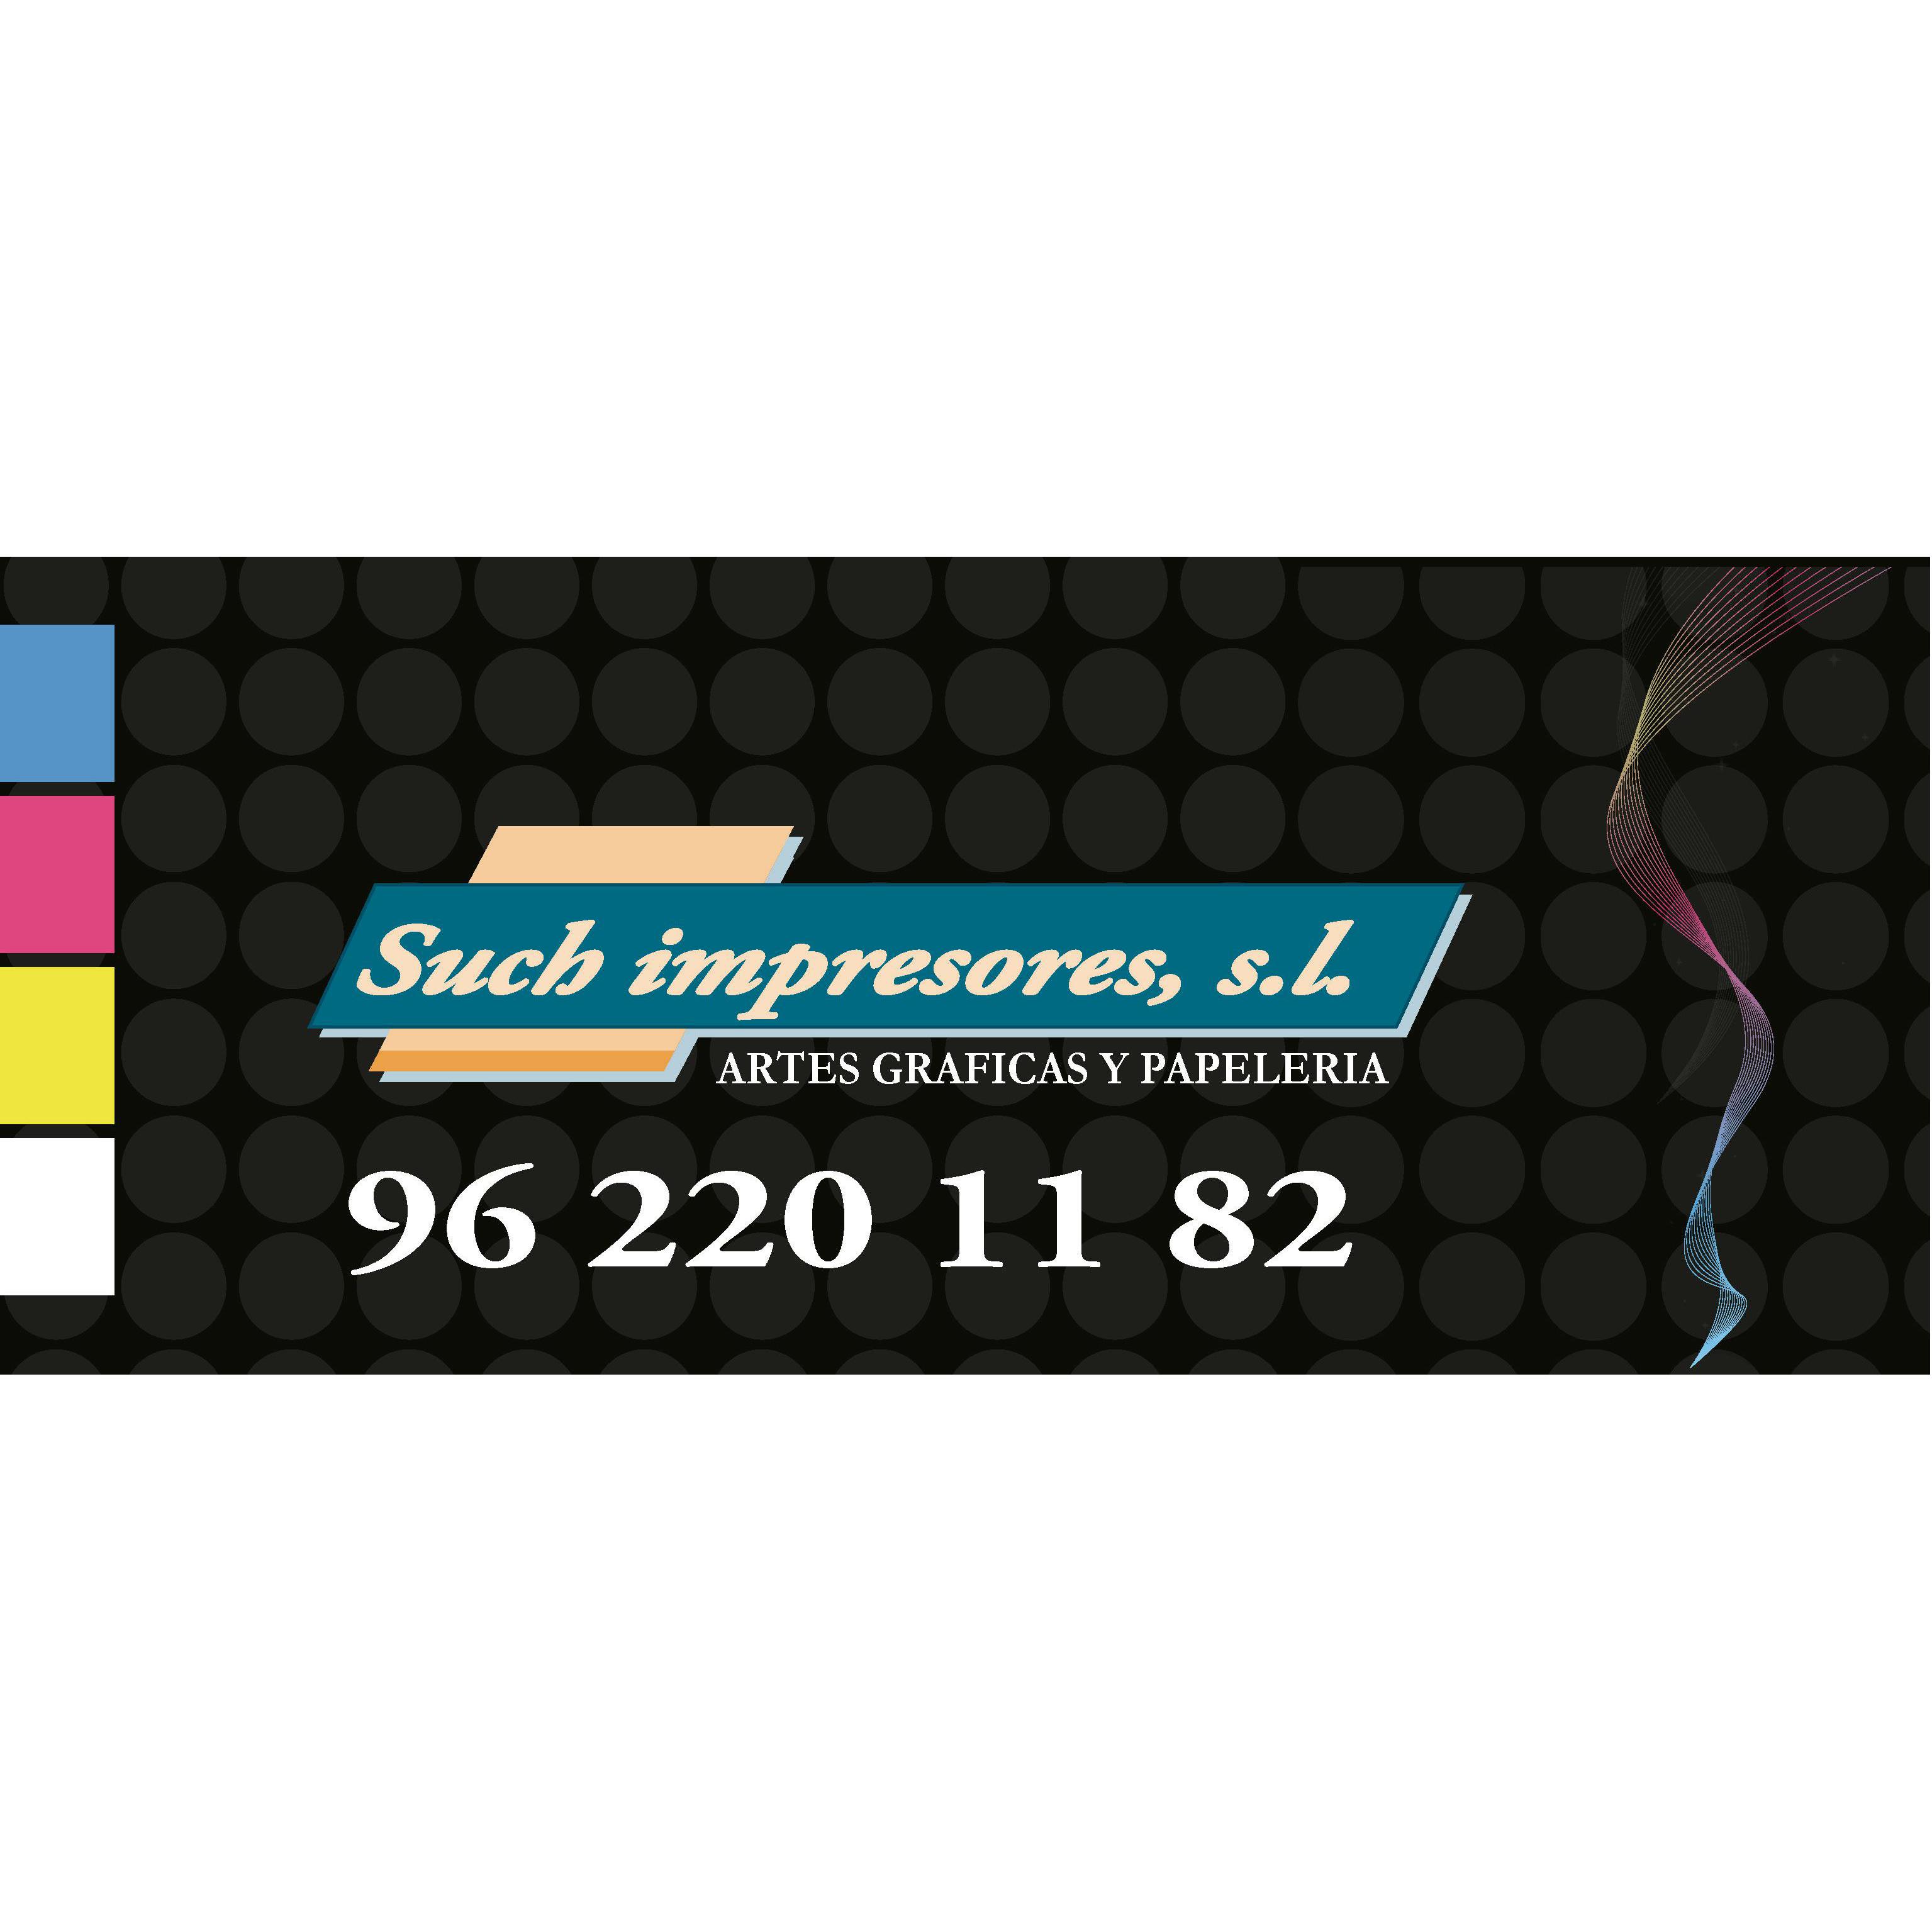 Such Impresores S.L. Logo